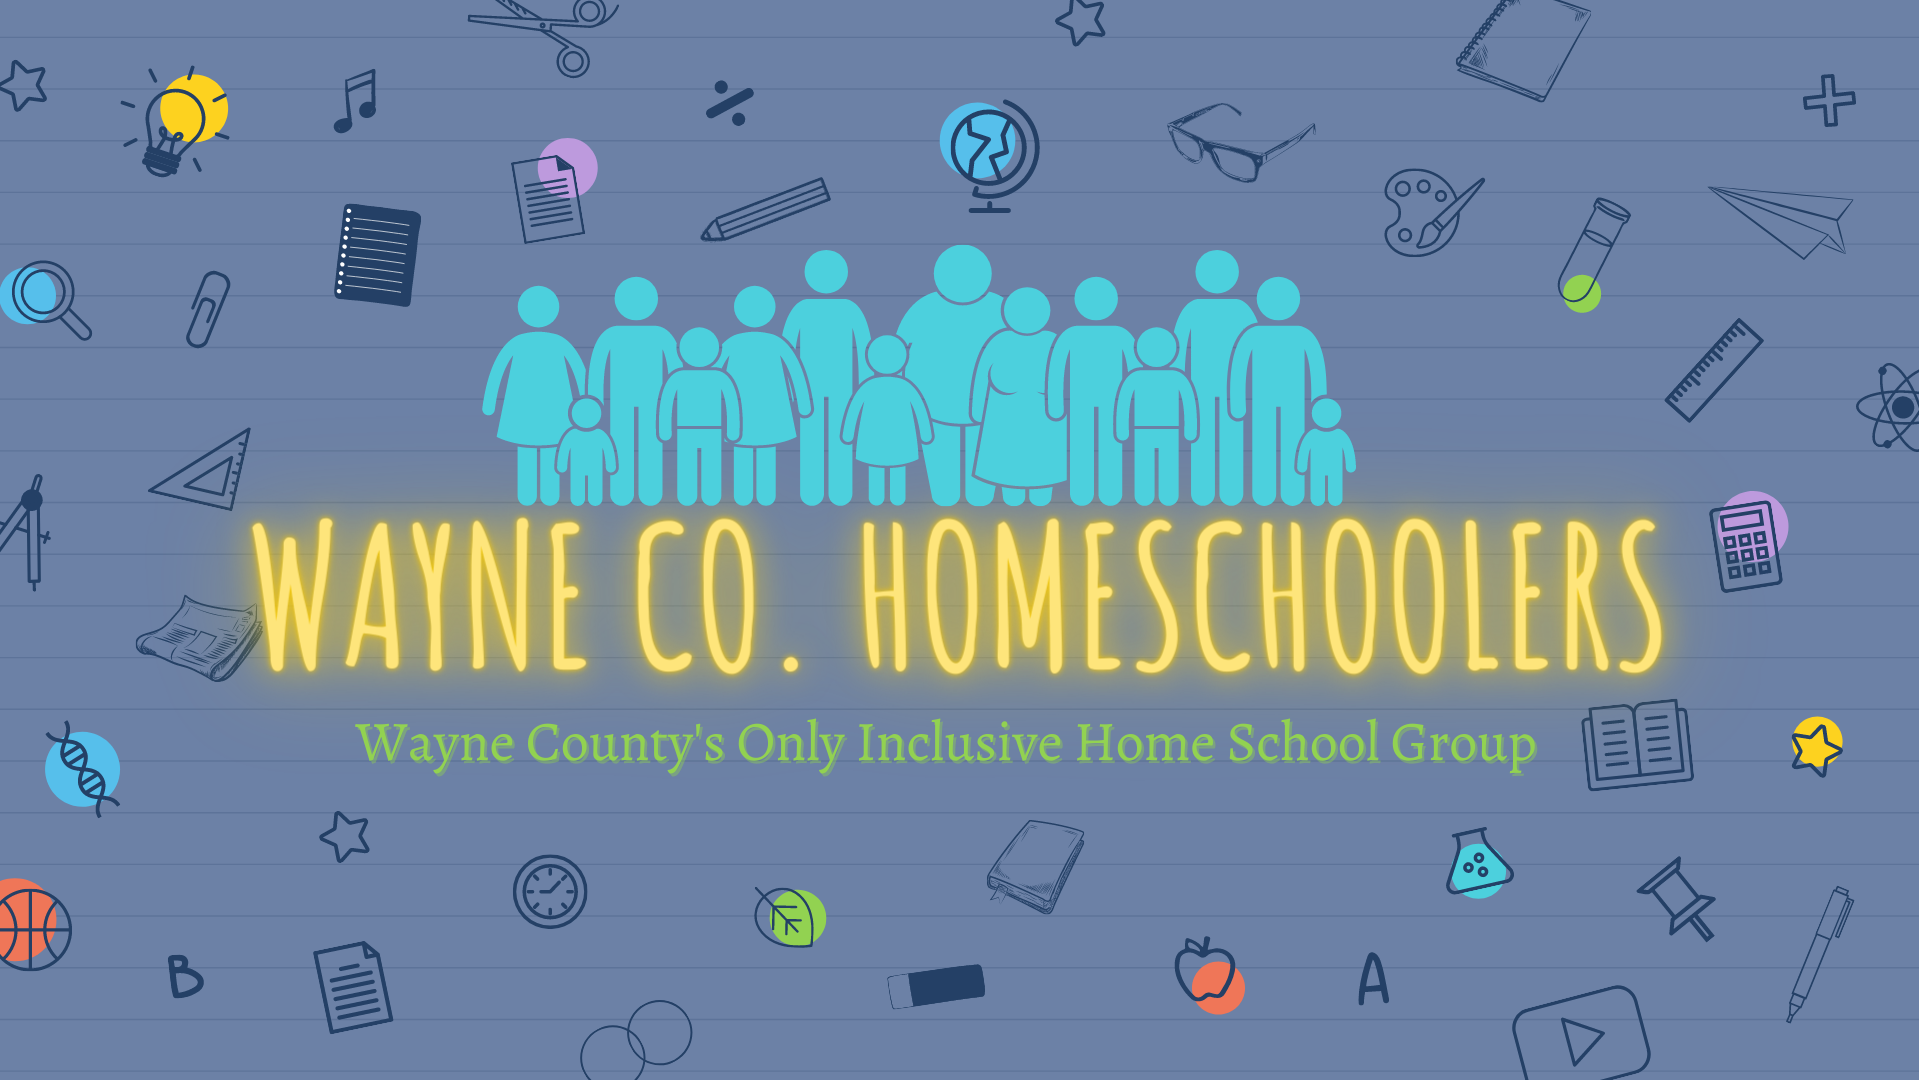 Wayne County Home Schoolers